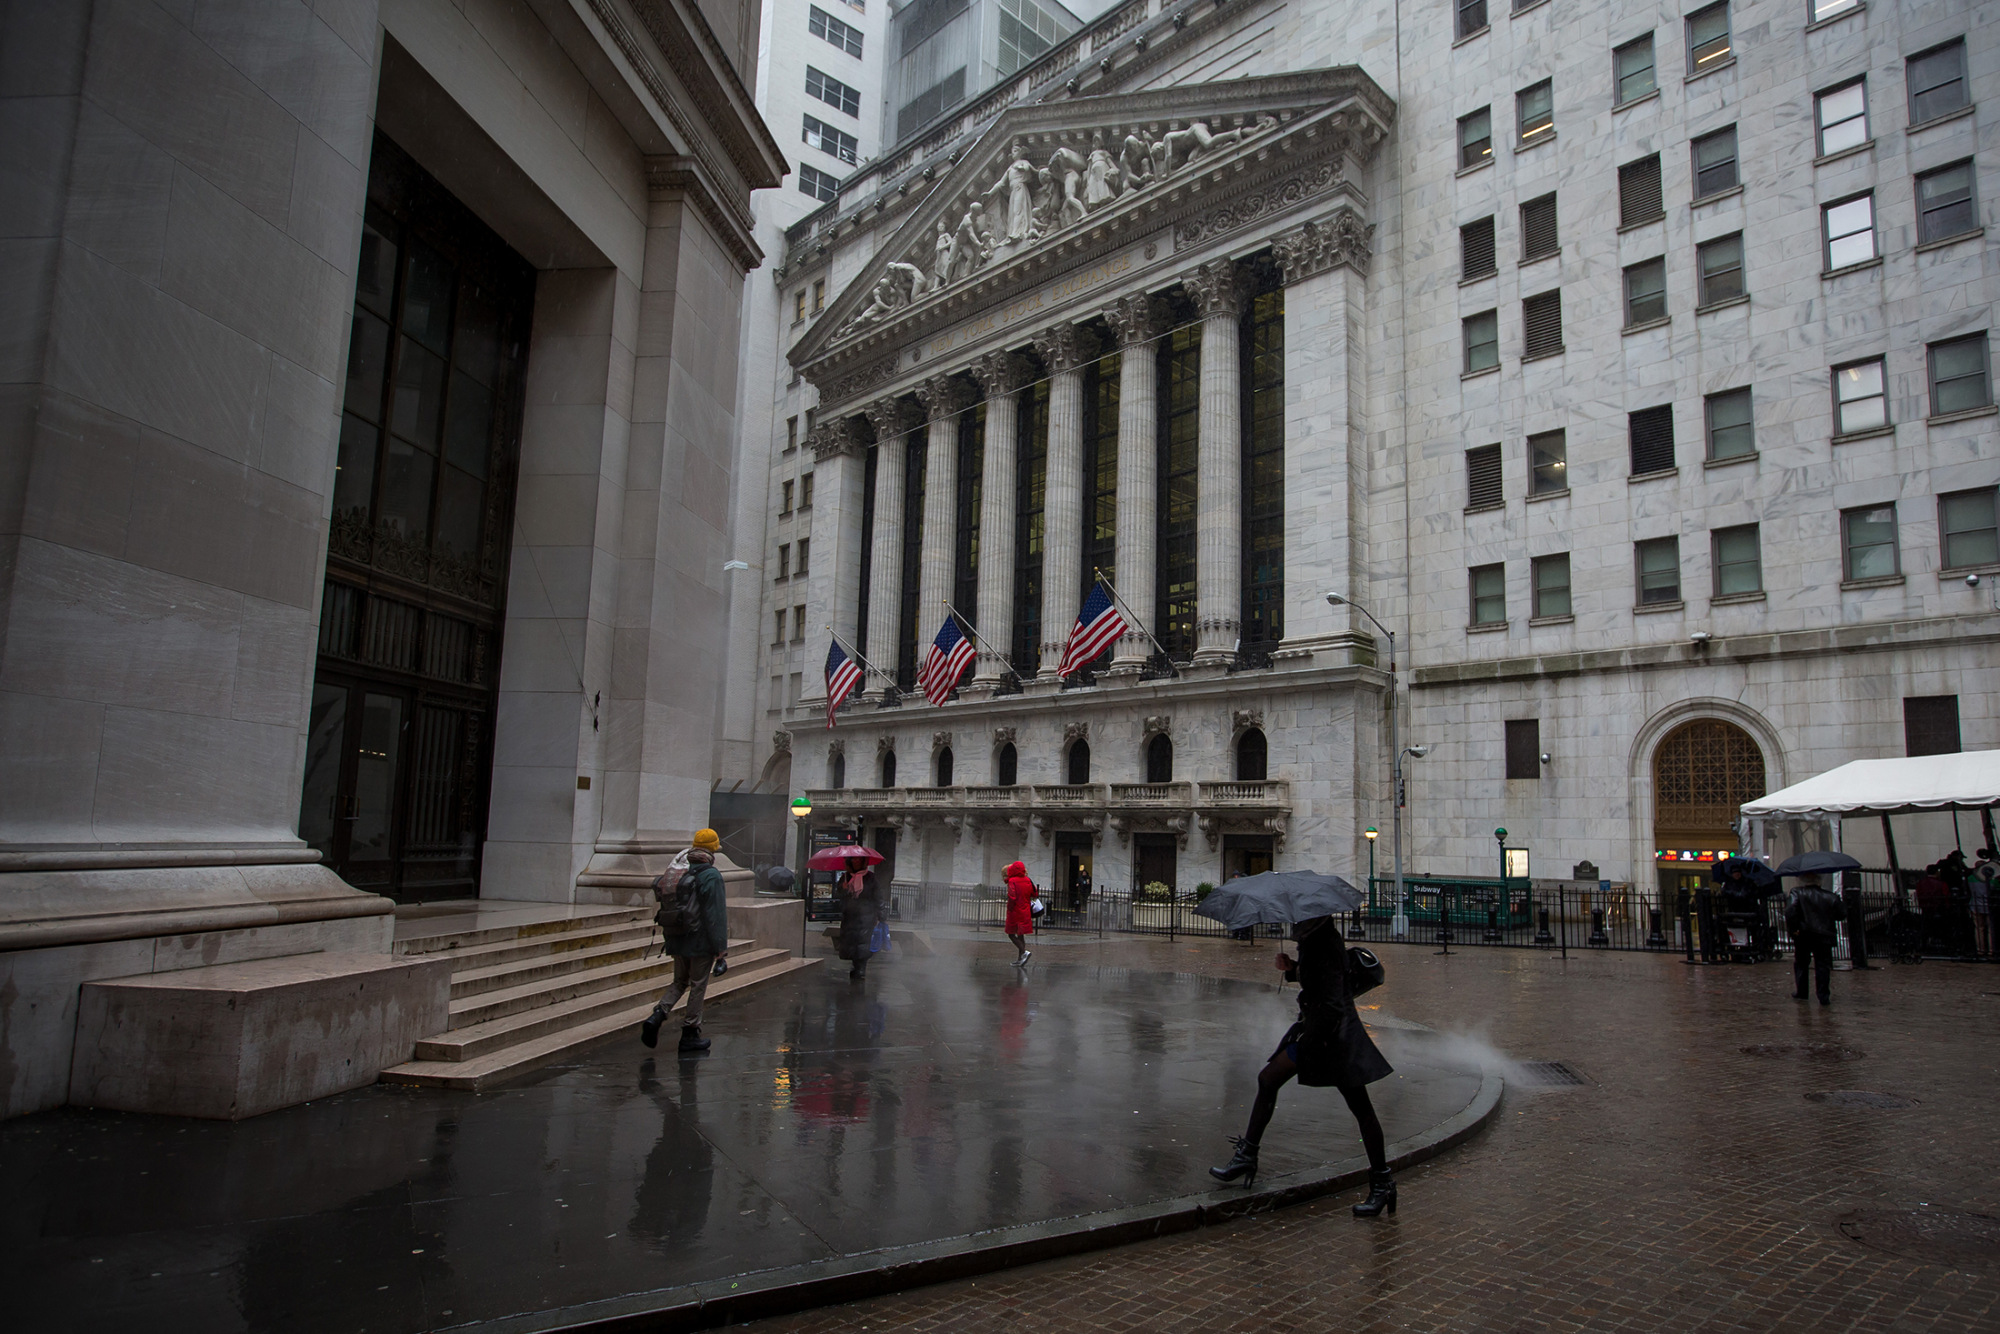 The New York Stock Exchange
